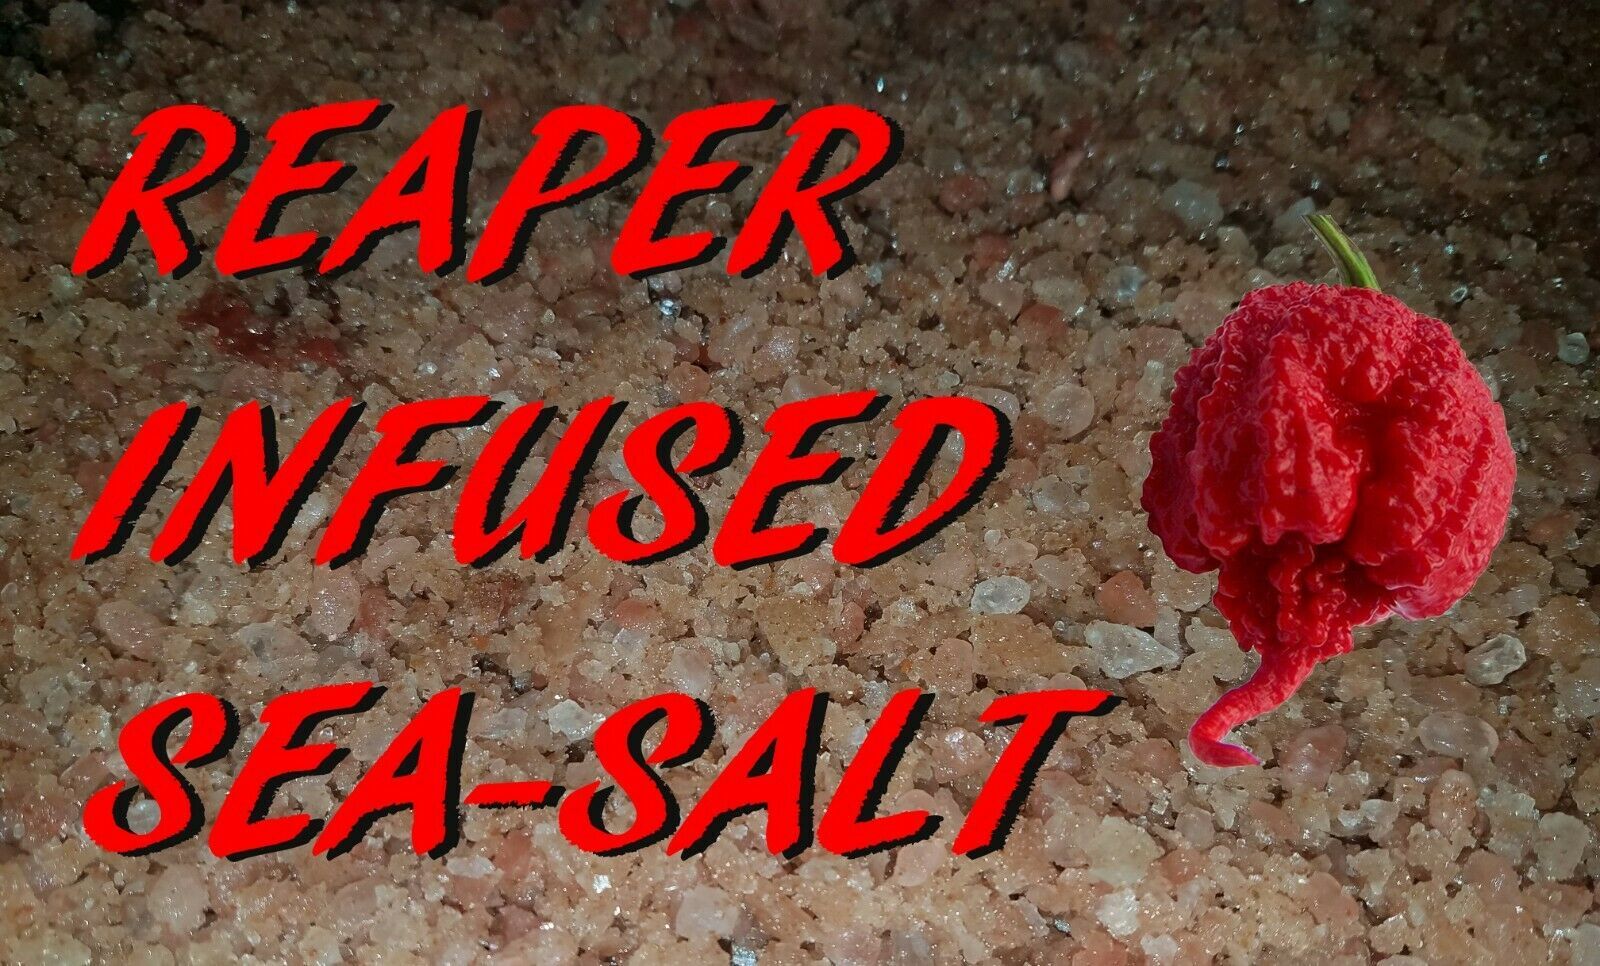 CAROLINA REAPER triple infused Sea Salt. Devilishly hot and devastating! CAUTION - $6.50 - $70.00